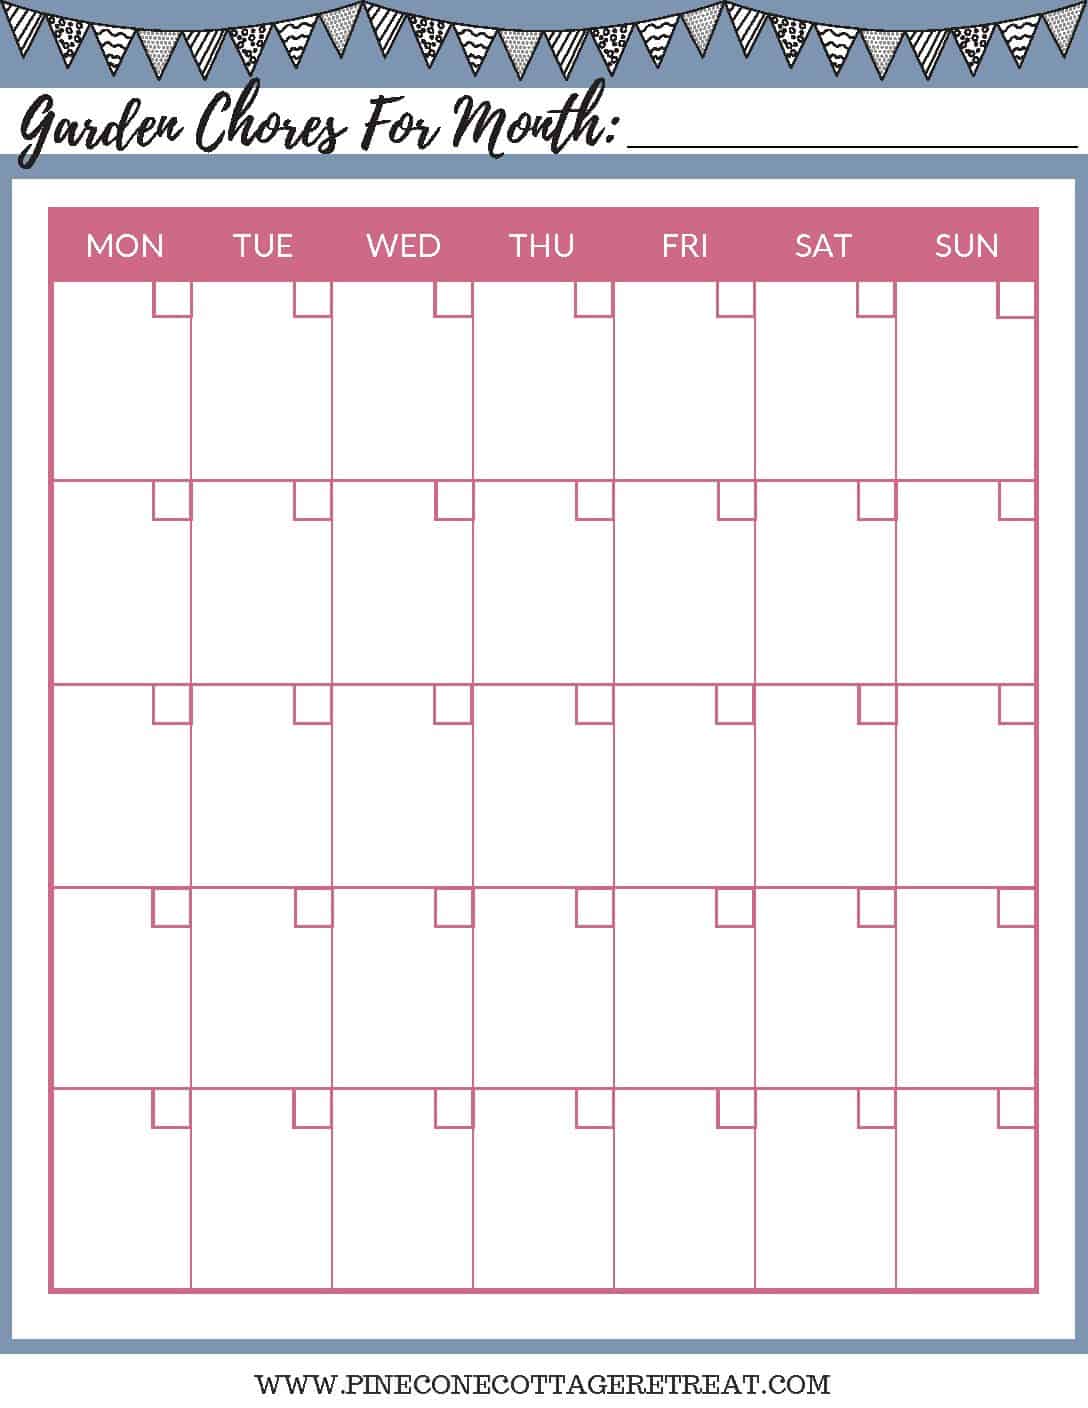 Garden Chores Calendar Printable - Pinecone Cottage Retreat